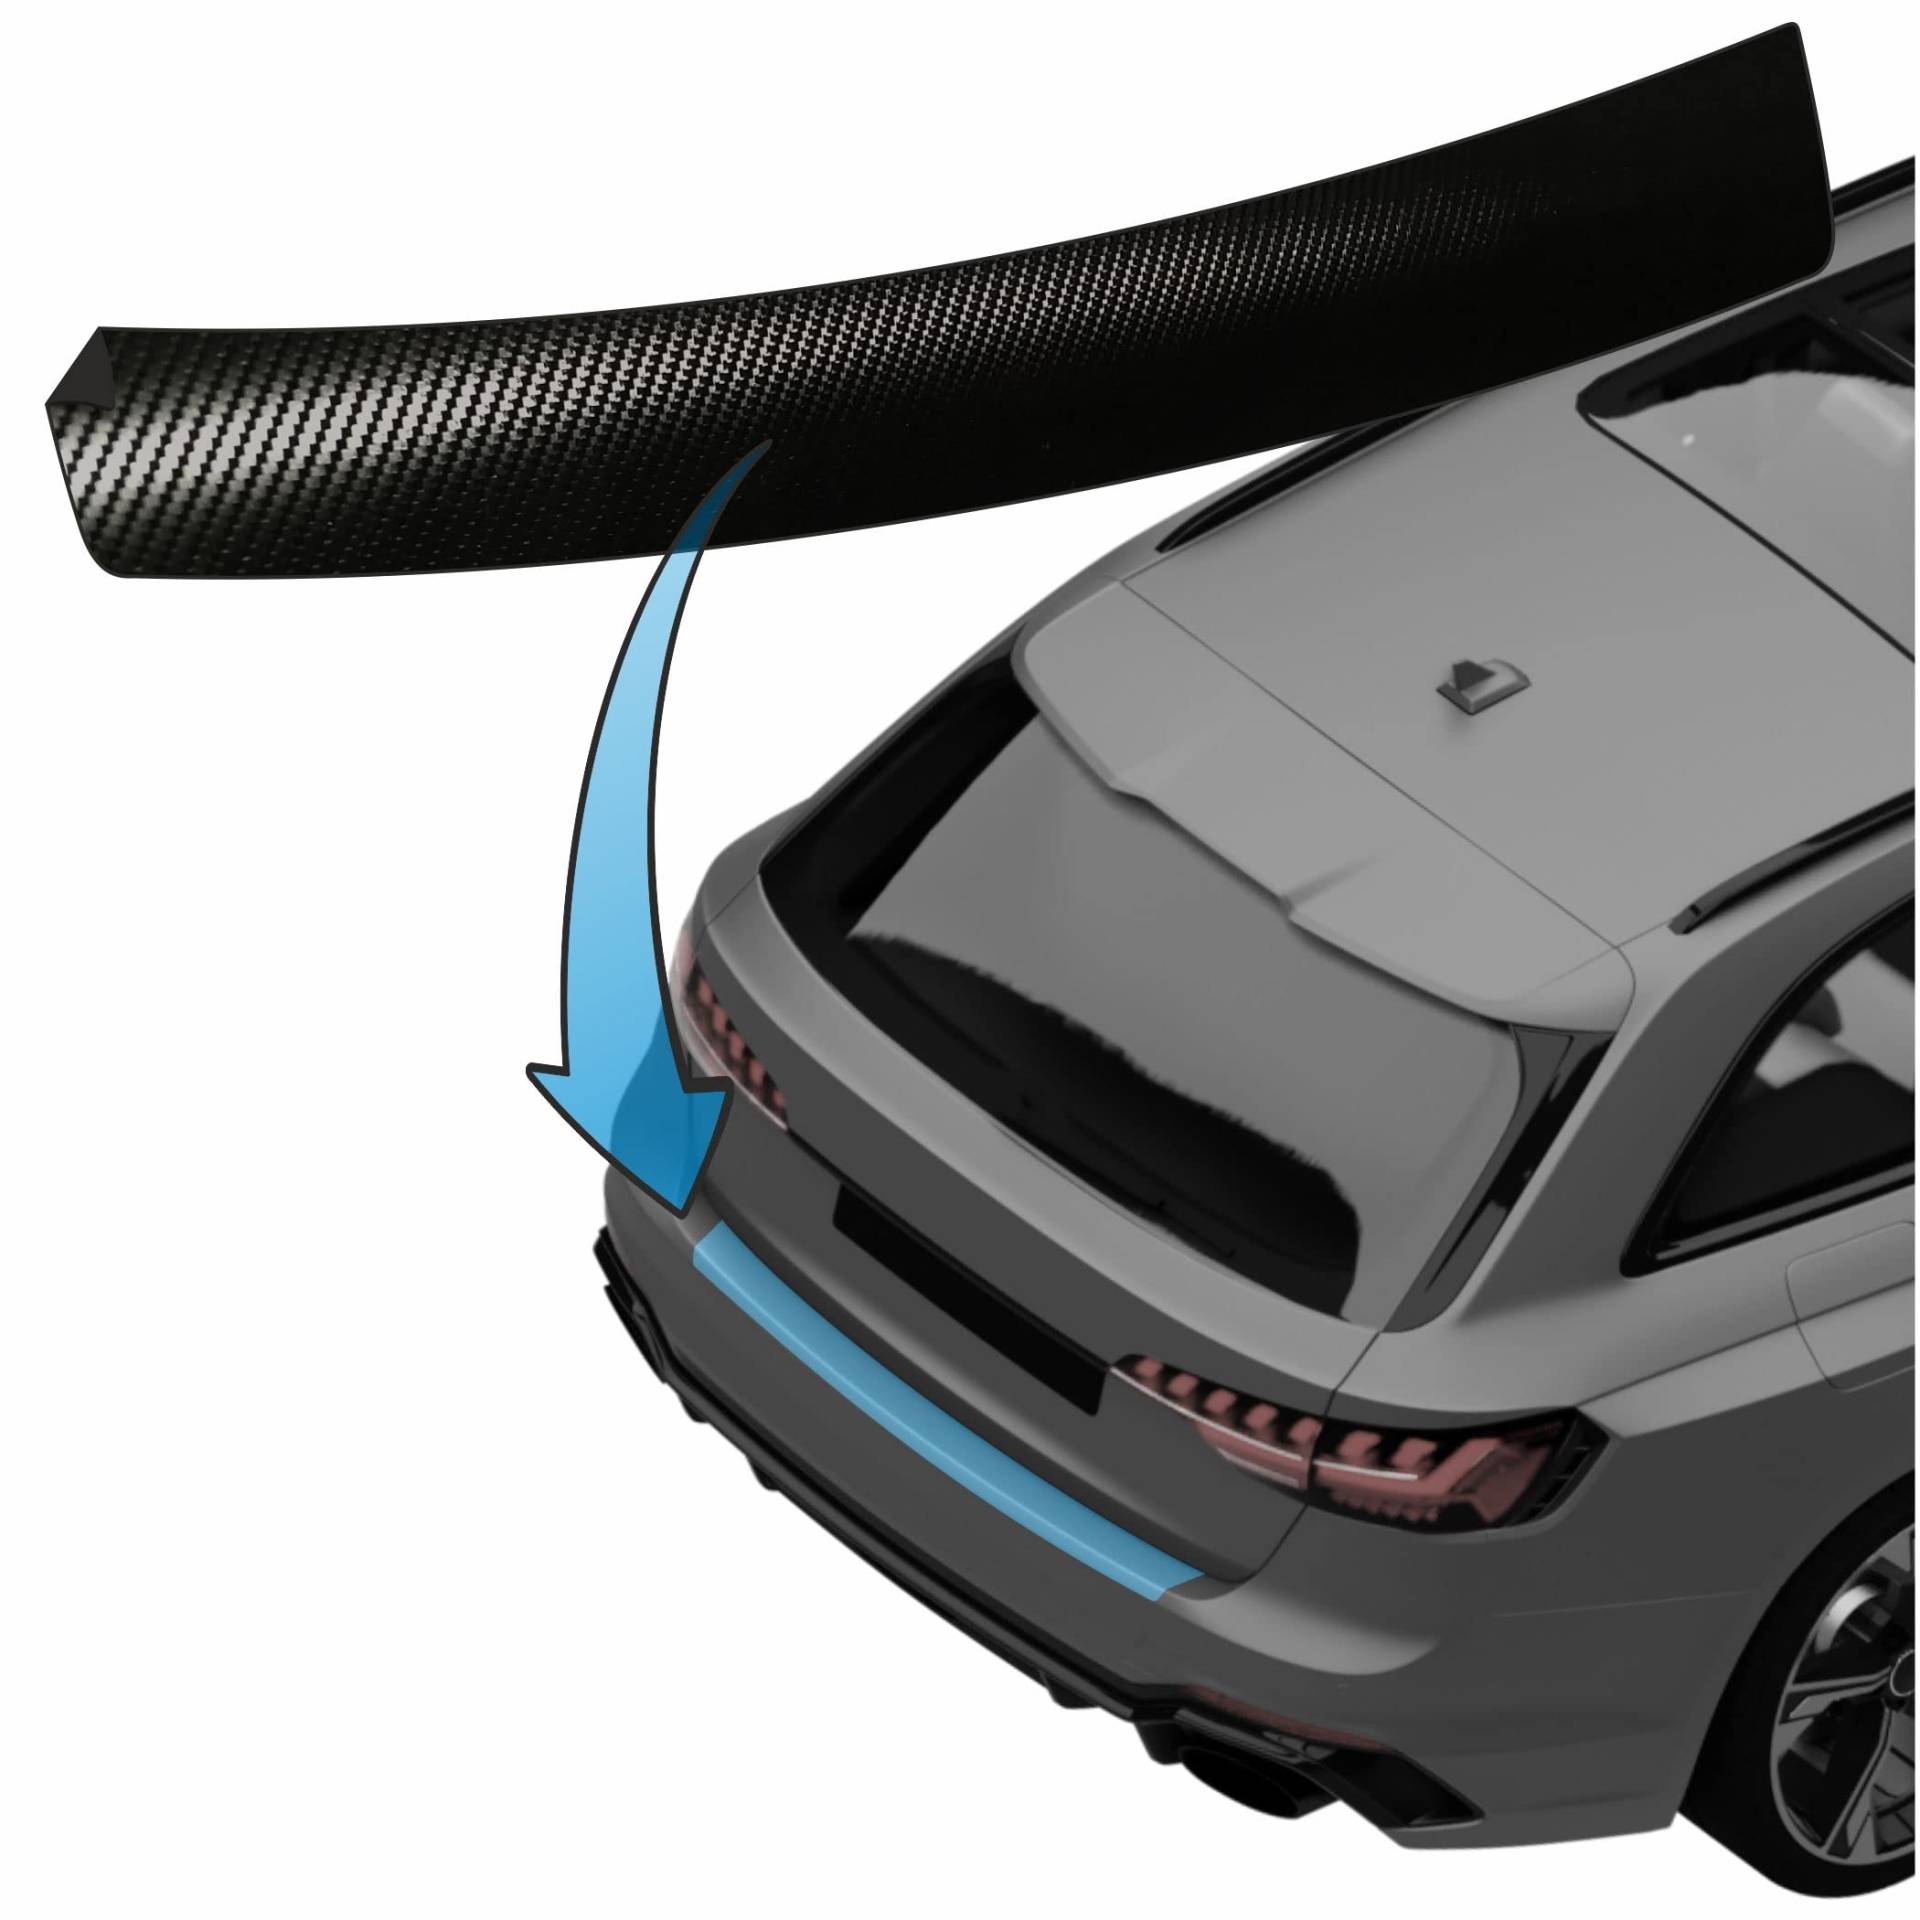 MisterLacky – Lackschutzfolie mit Rakel als Ladekantenschutz Folie passend für Audi A4 Cabrio Typ B7/8E, BJ 2006-2009 in 3D Carbon schwarz (160µm) von Lackschutzshop